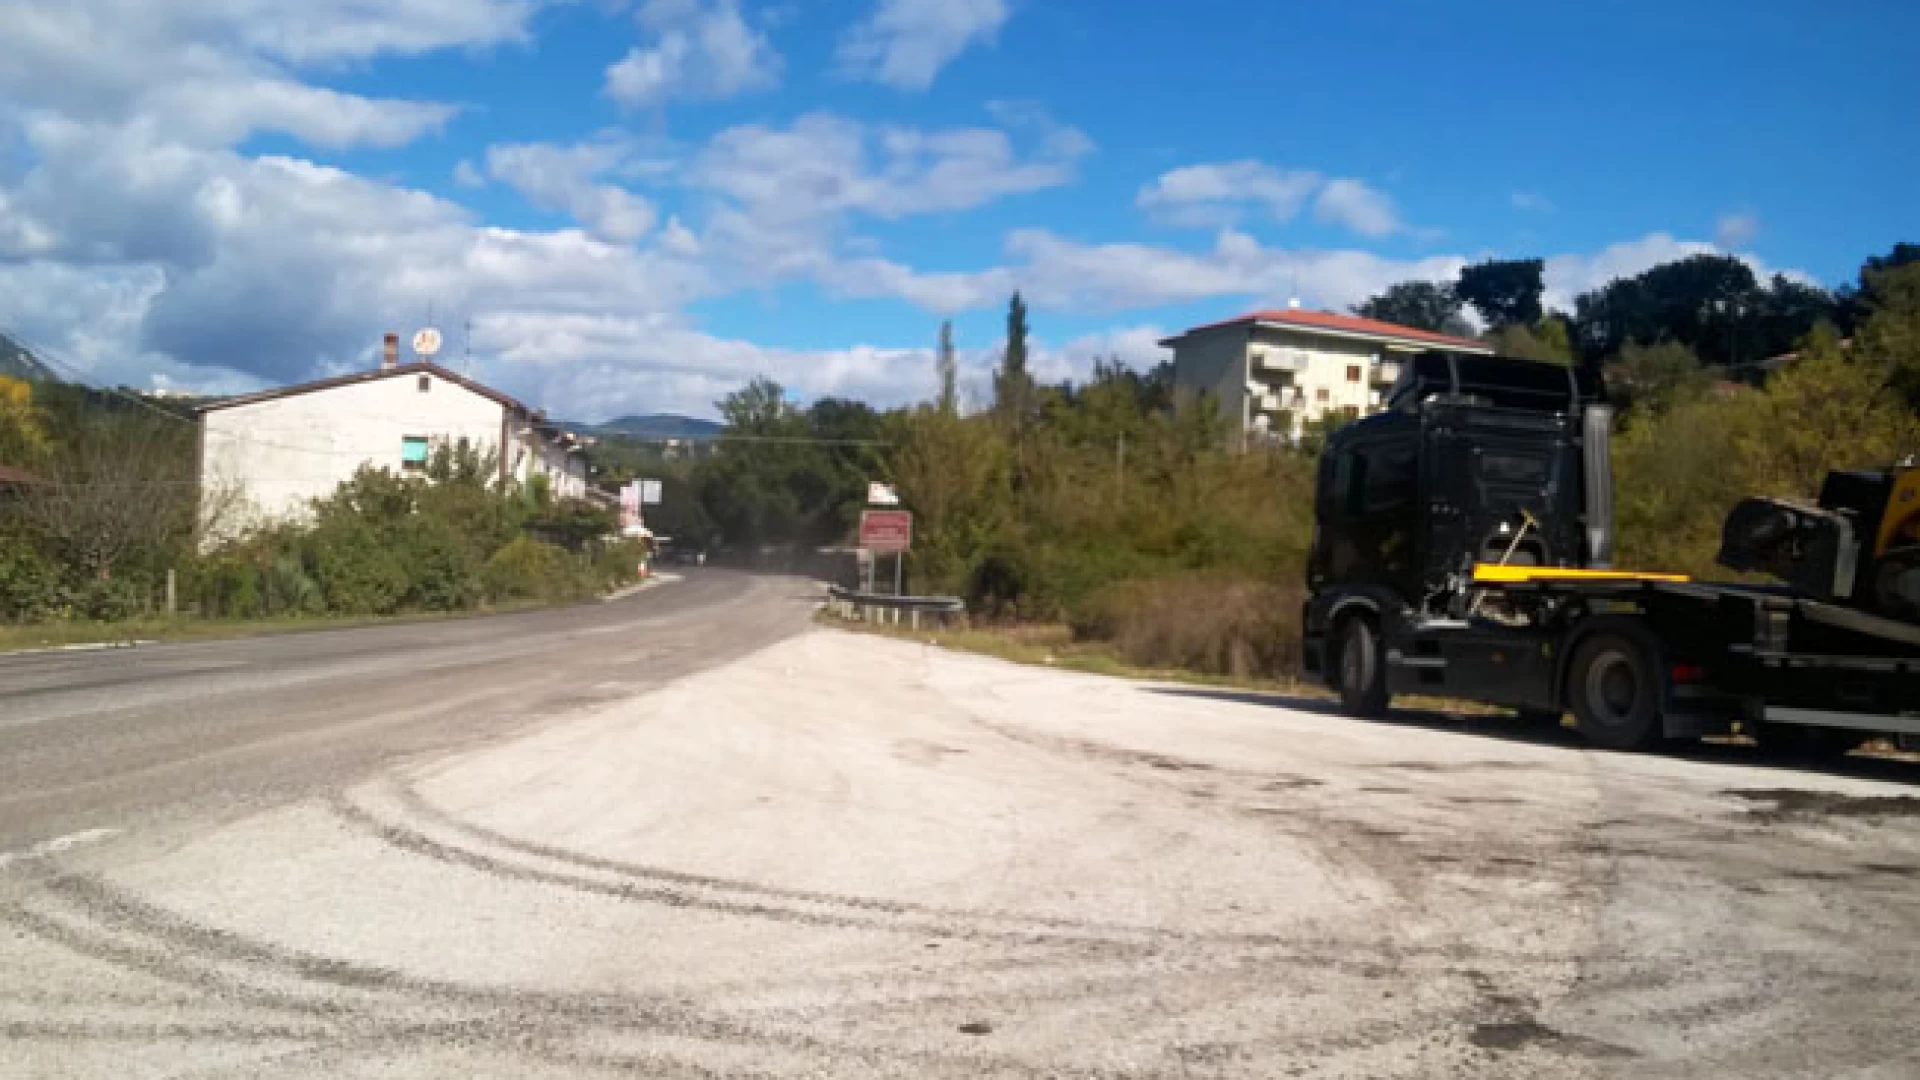 Colli a Volturno: nuovo look per la strada statale 158 “Valle del Volturno”. Iniziati i lavori di rifacimento del manto stradale.